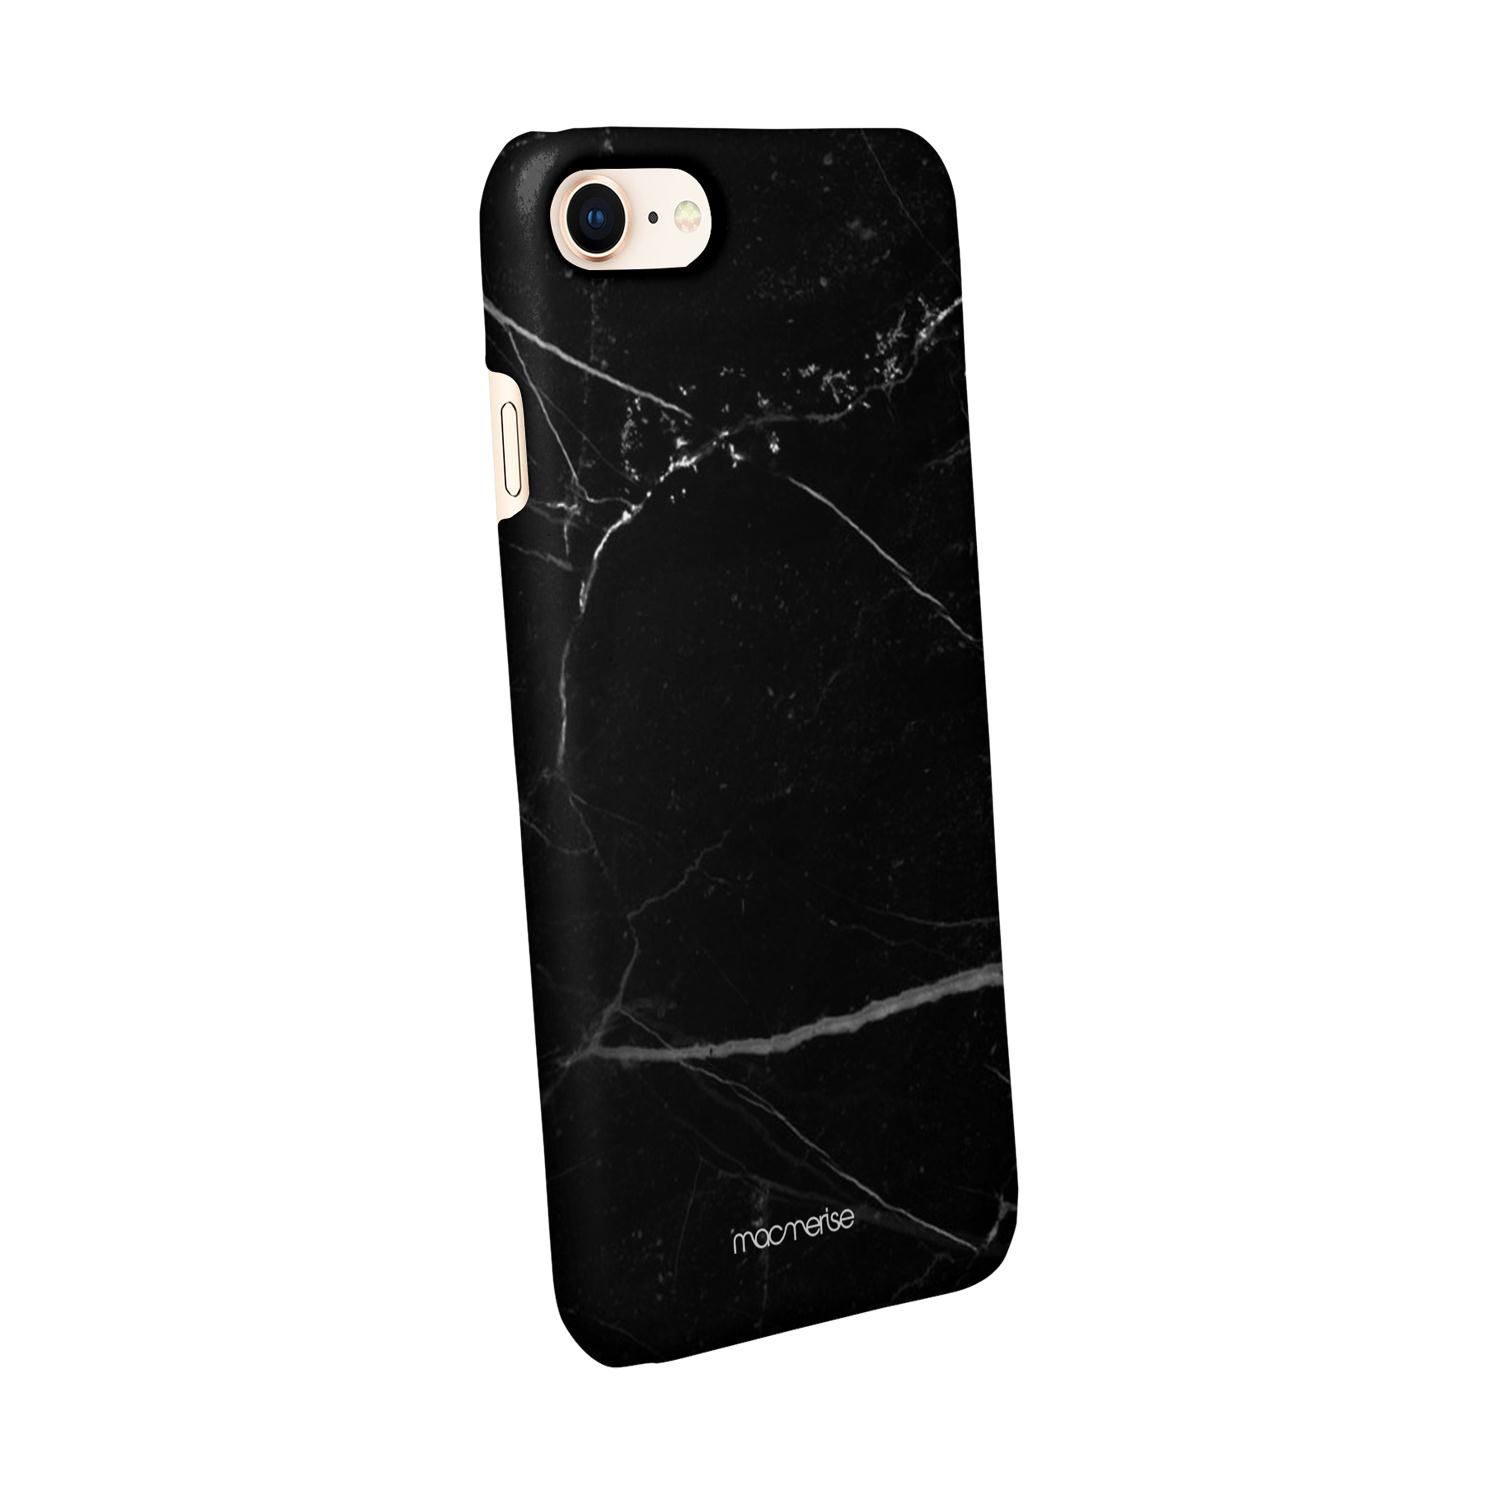 Buy Marble Noir Belge - Sleek Phone Case for iPhone 8 Online